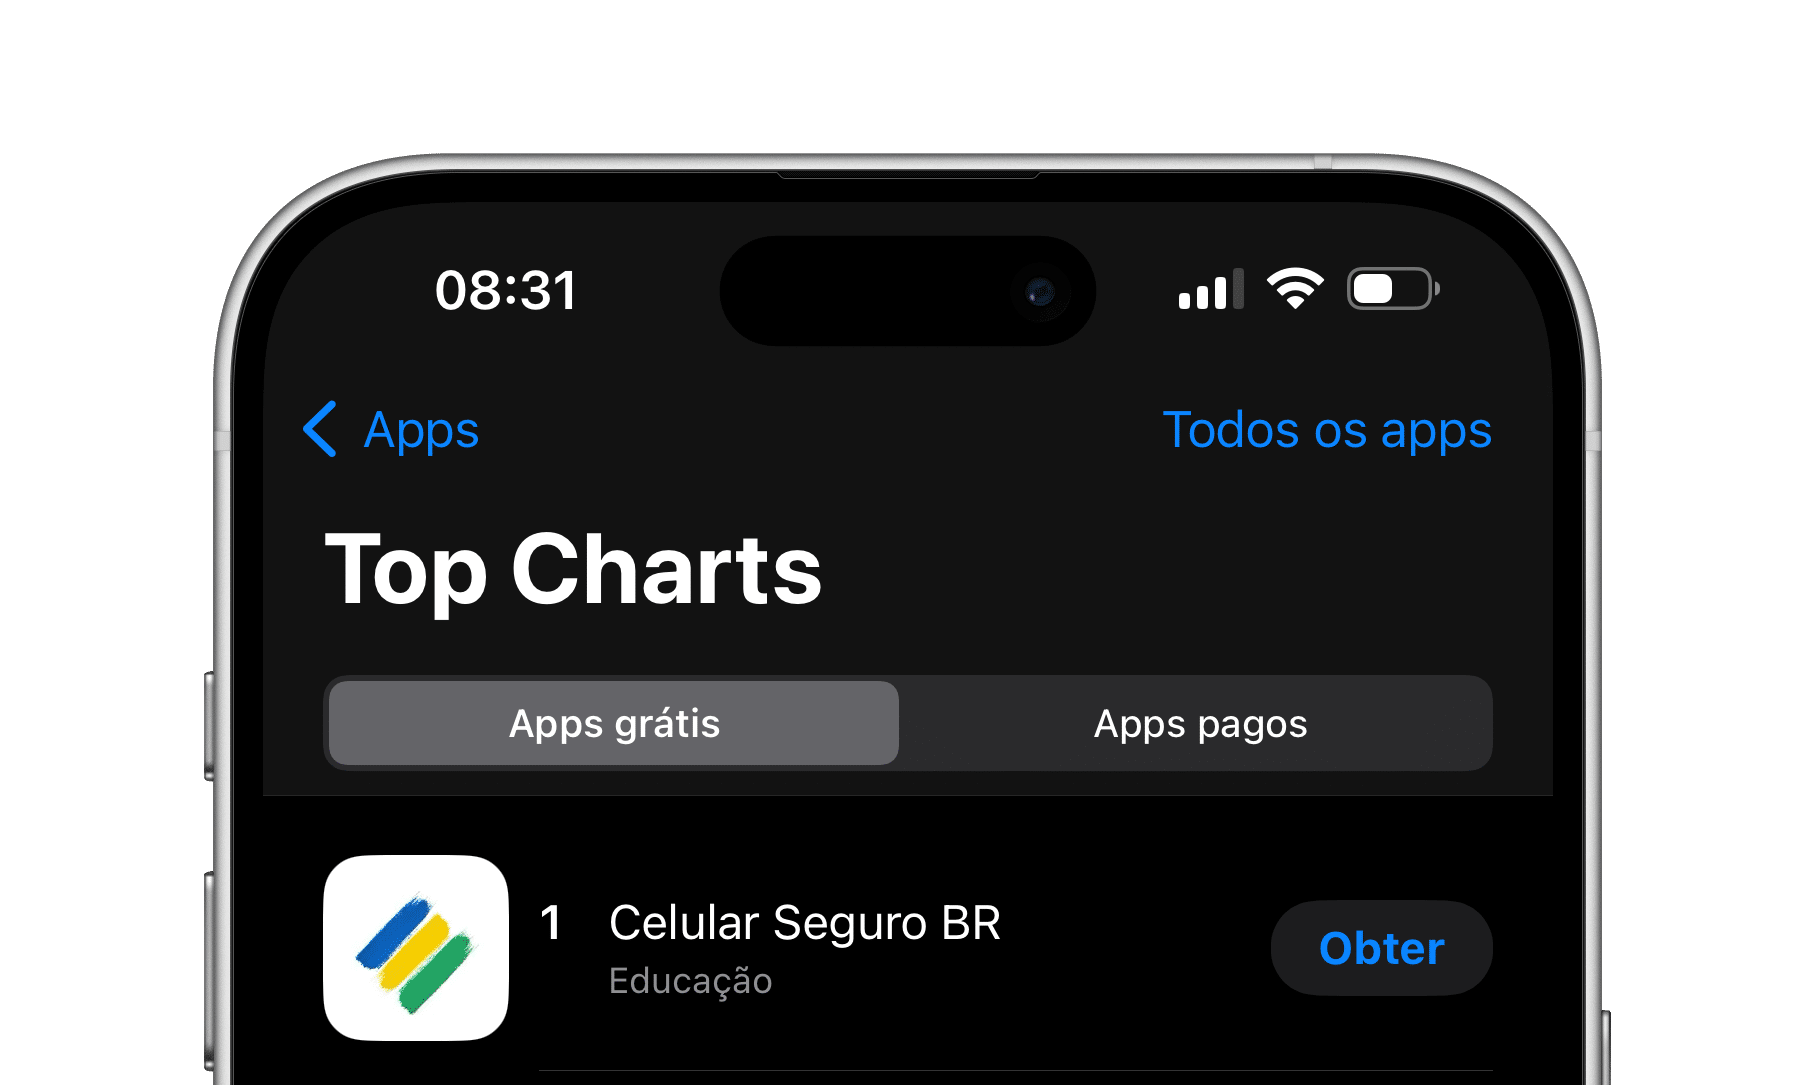 Celular Seguro no Top Chats da App Store